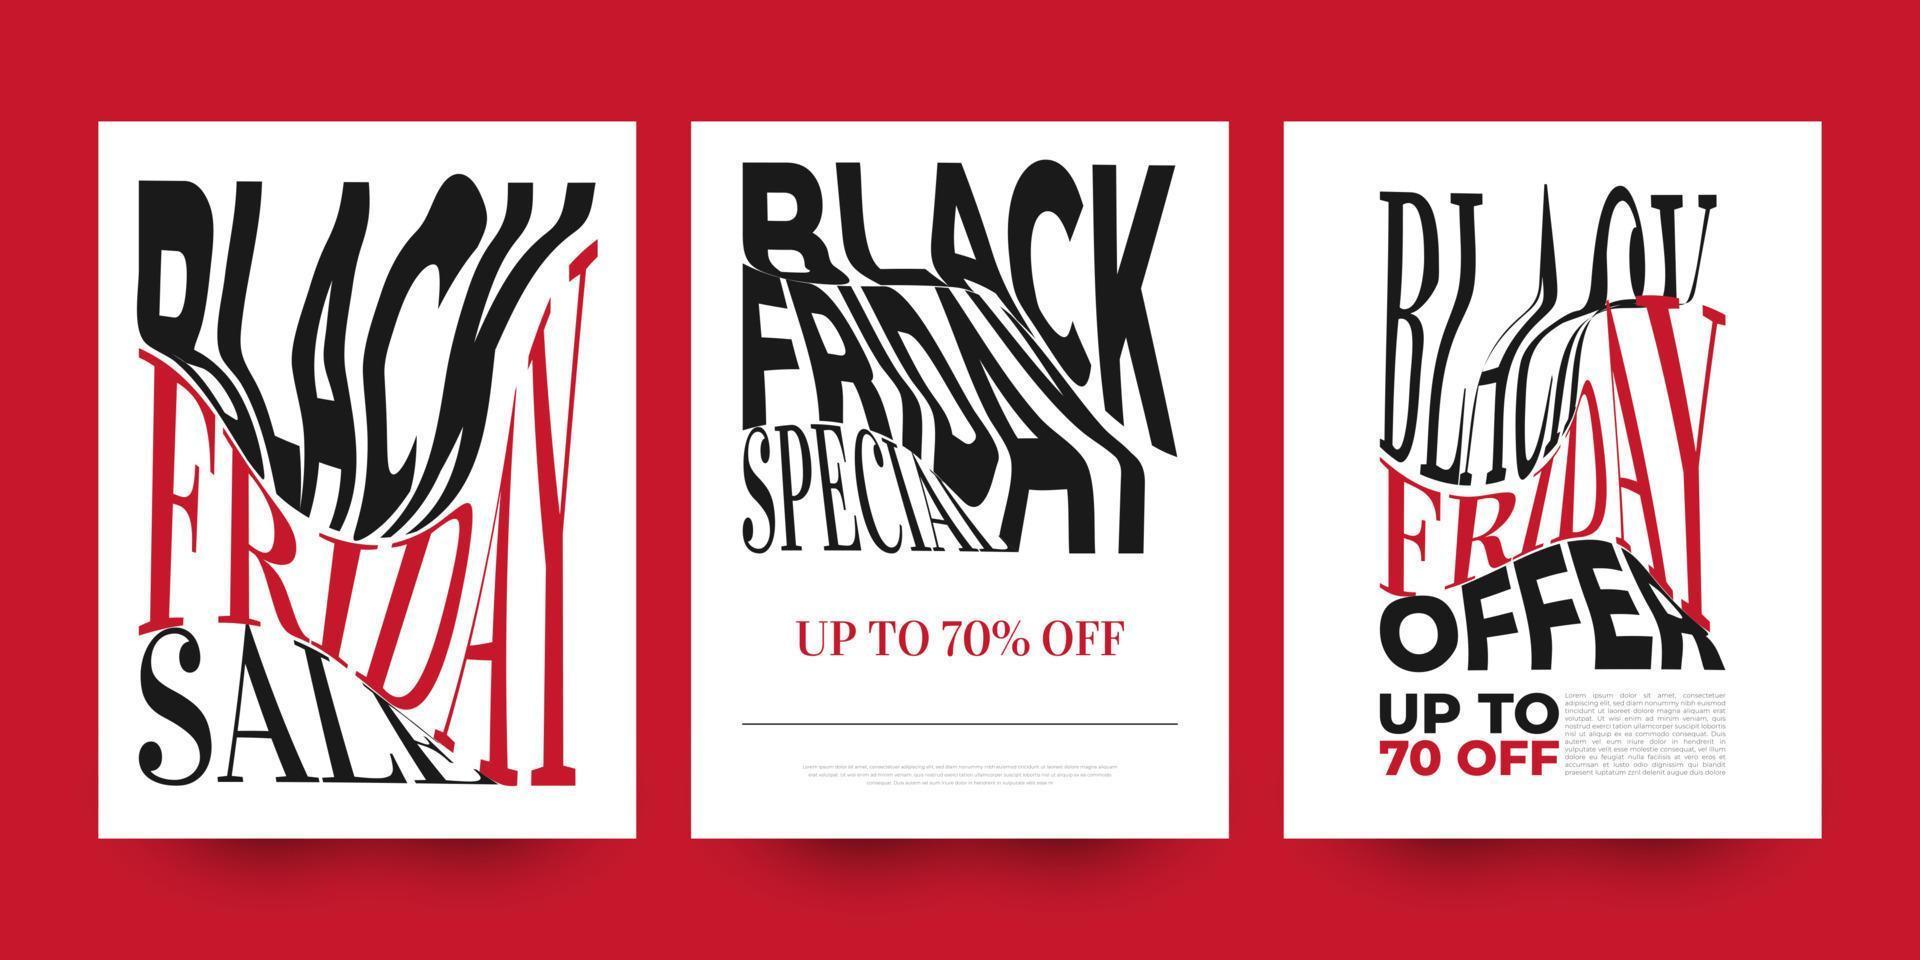 kreativ svart fredag försäljning baner eller affisch uppsättning. affisch, flygblad, broschyr eller social media mall design för svart fredag kampanj befordran och reklam vektor